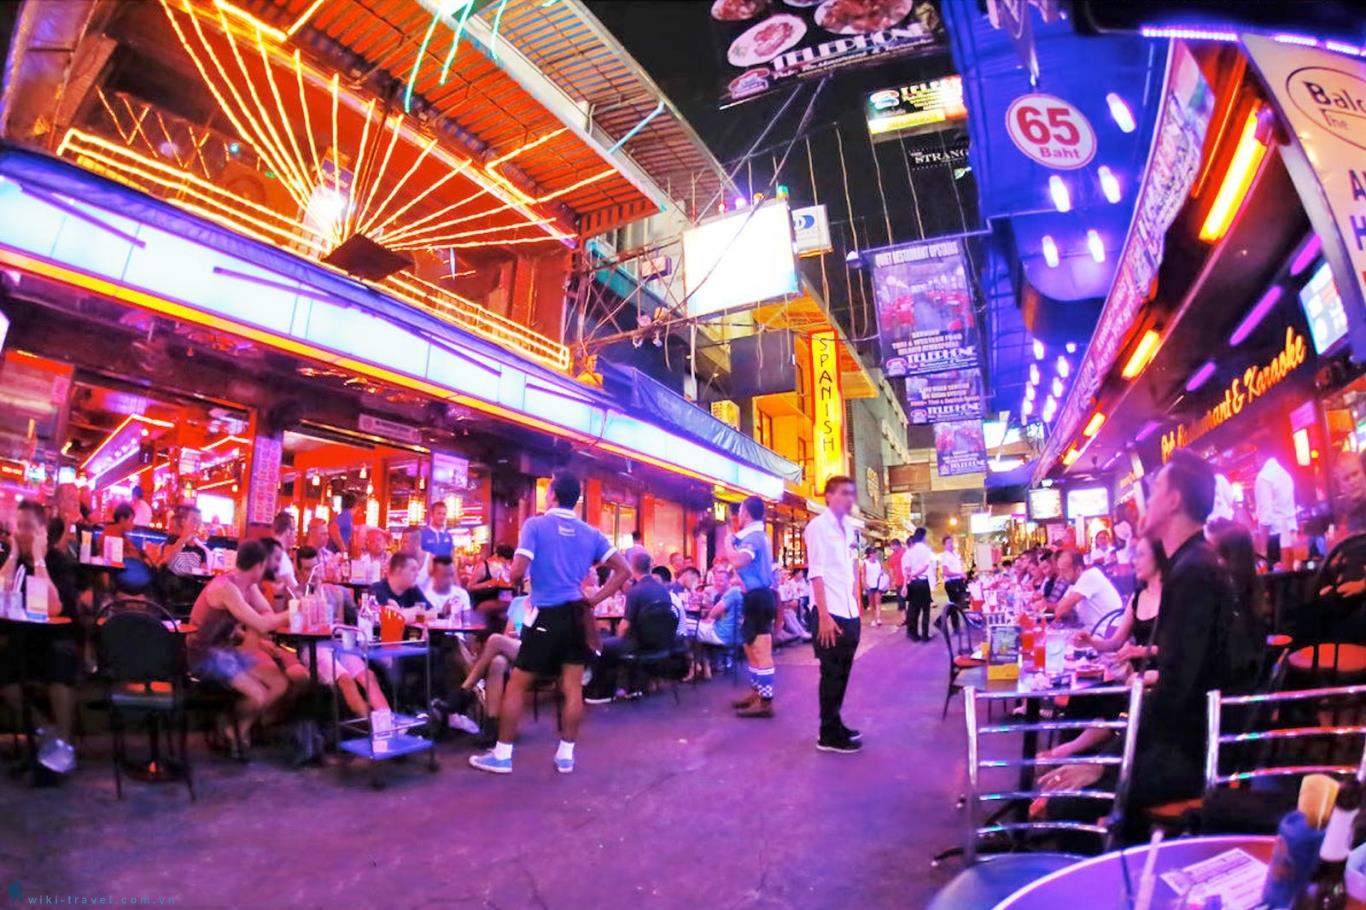 Du lịch Thái Lan 4N3Đ trải nghiệm té nước Songkran cùng team LGBT 